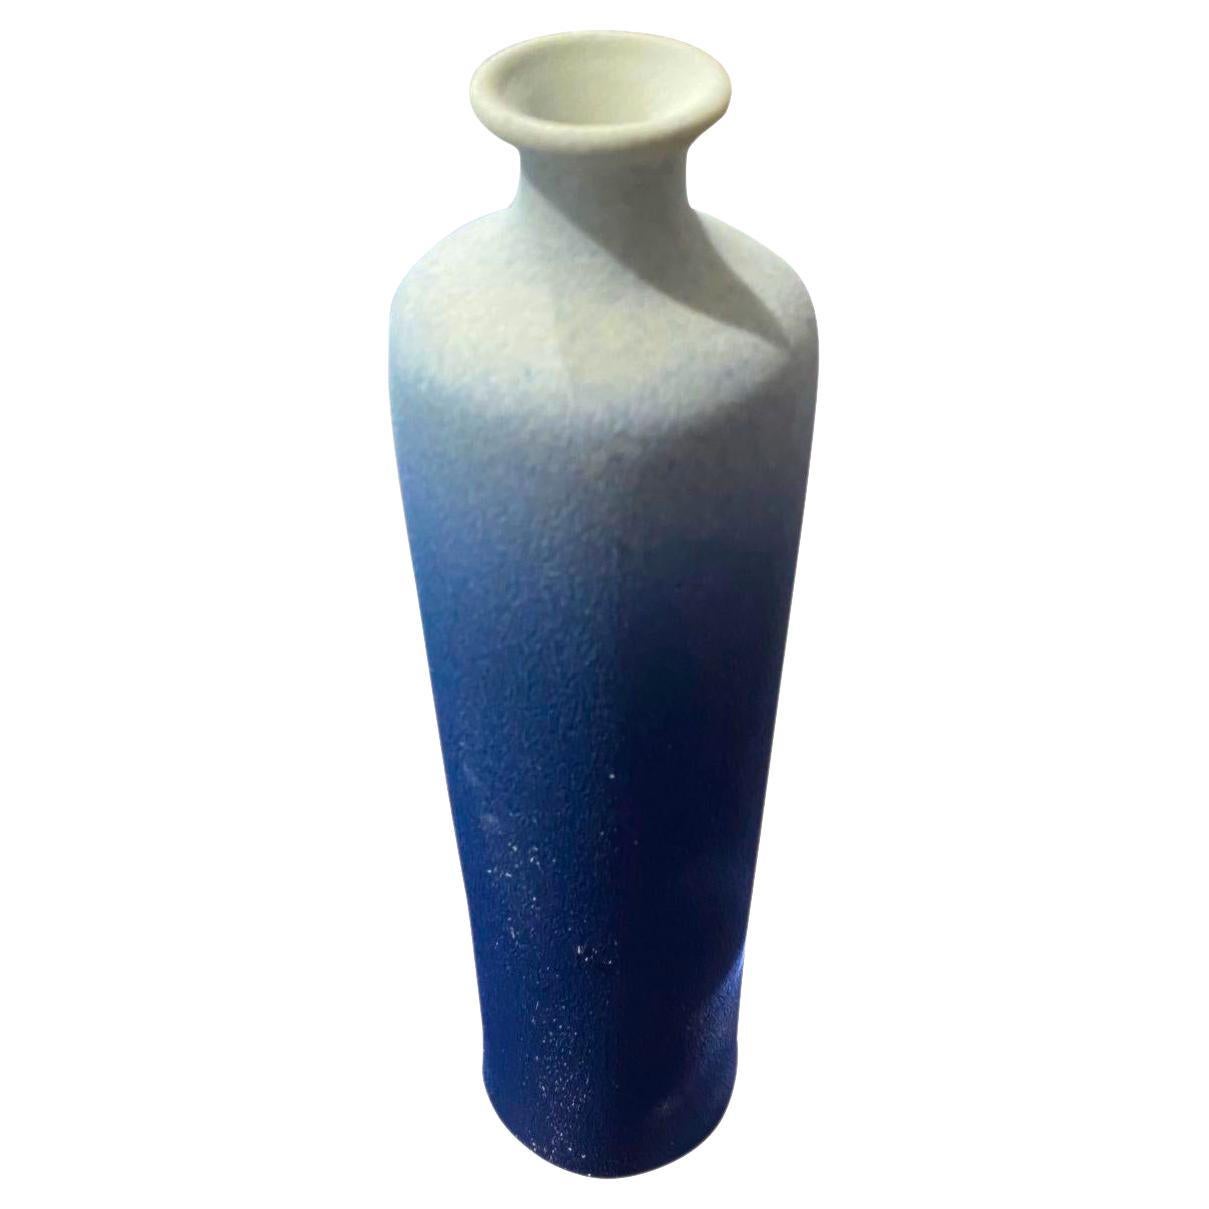 Vase contemporain chinois à glaçage bleu ombre.
Ouverture du bec mince et grande.
Fait partie d'une grande collection.